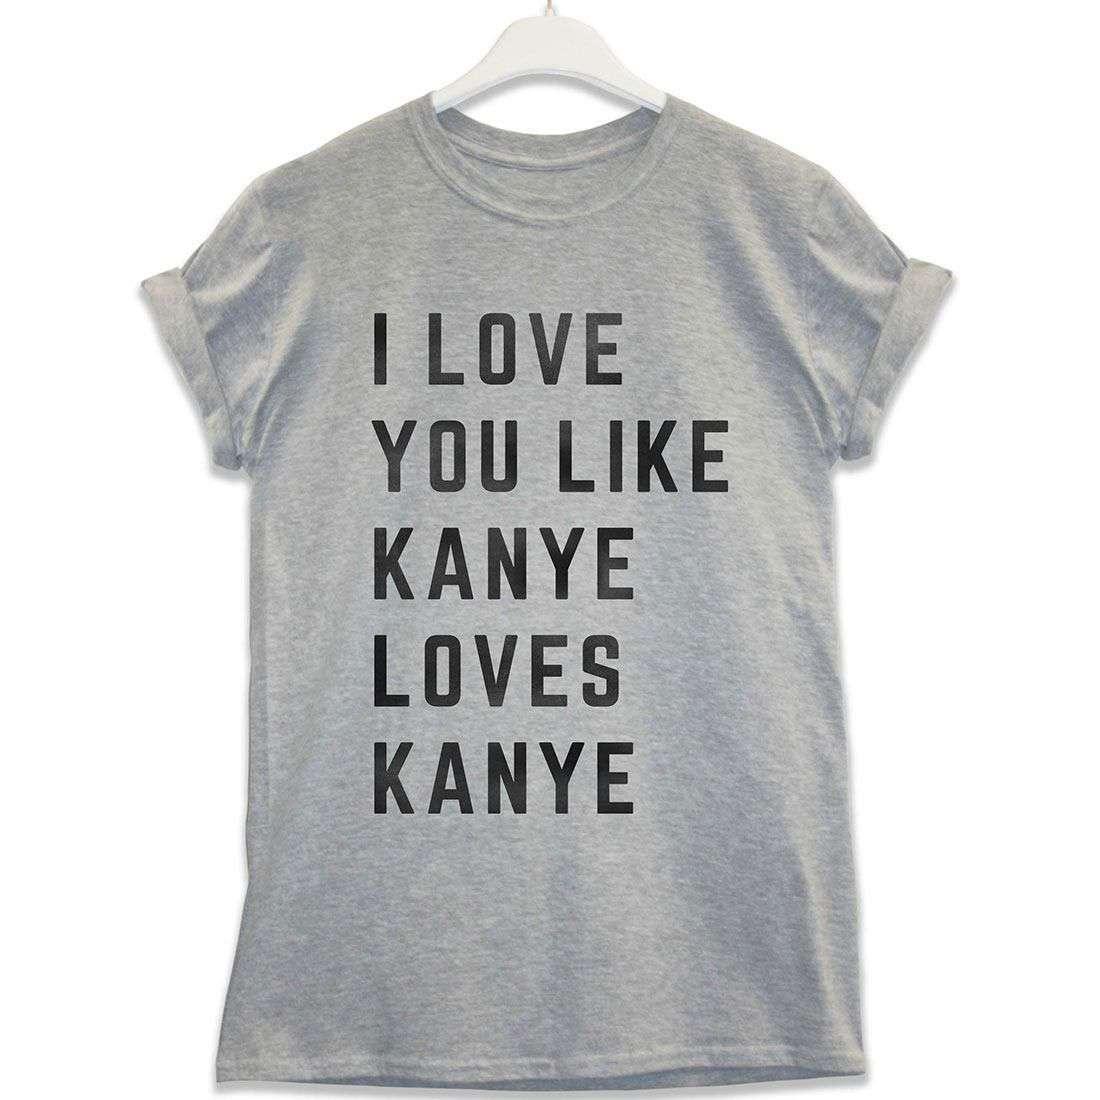 Kanye Loves Kanye Graphic T-Shirt For Men 8Ball